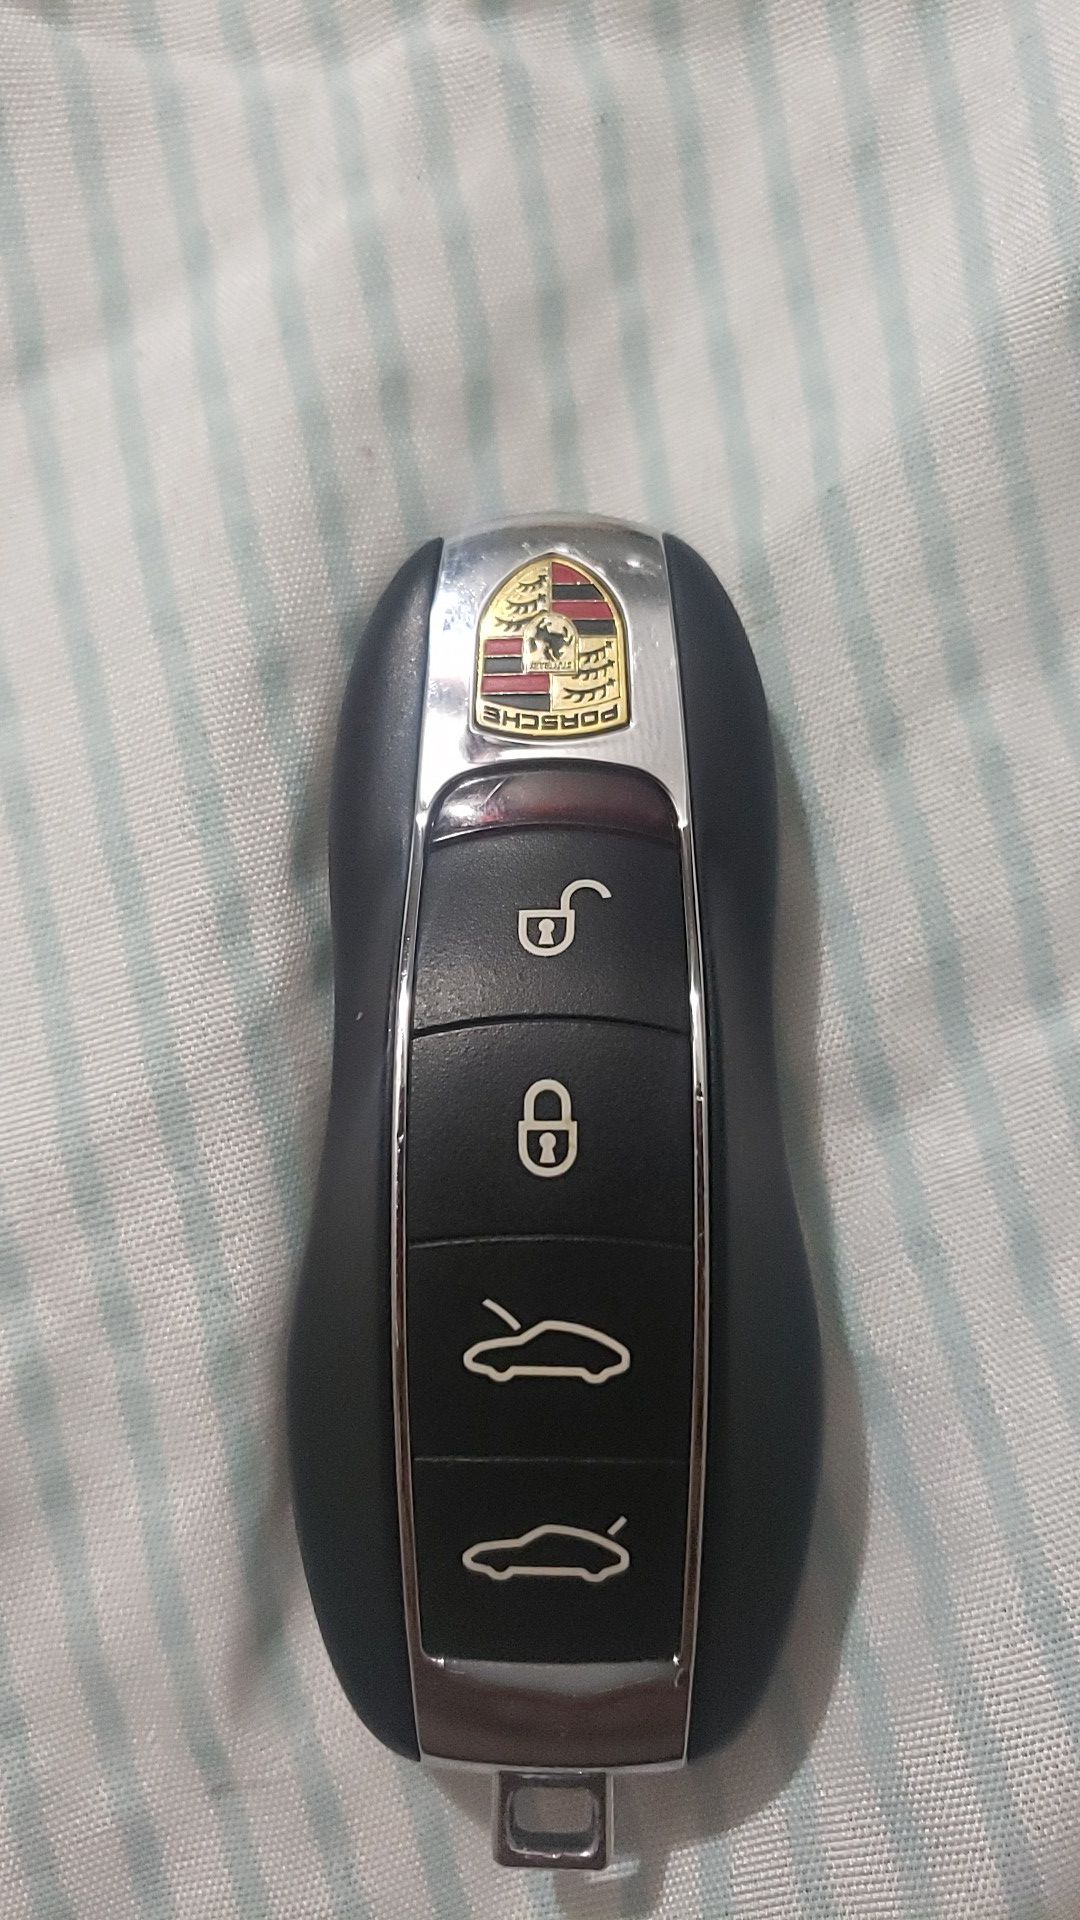 Porsche key fob